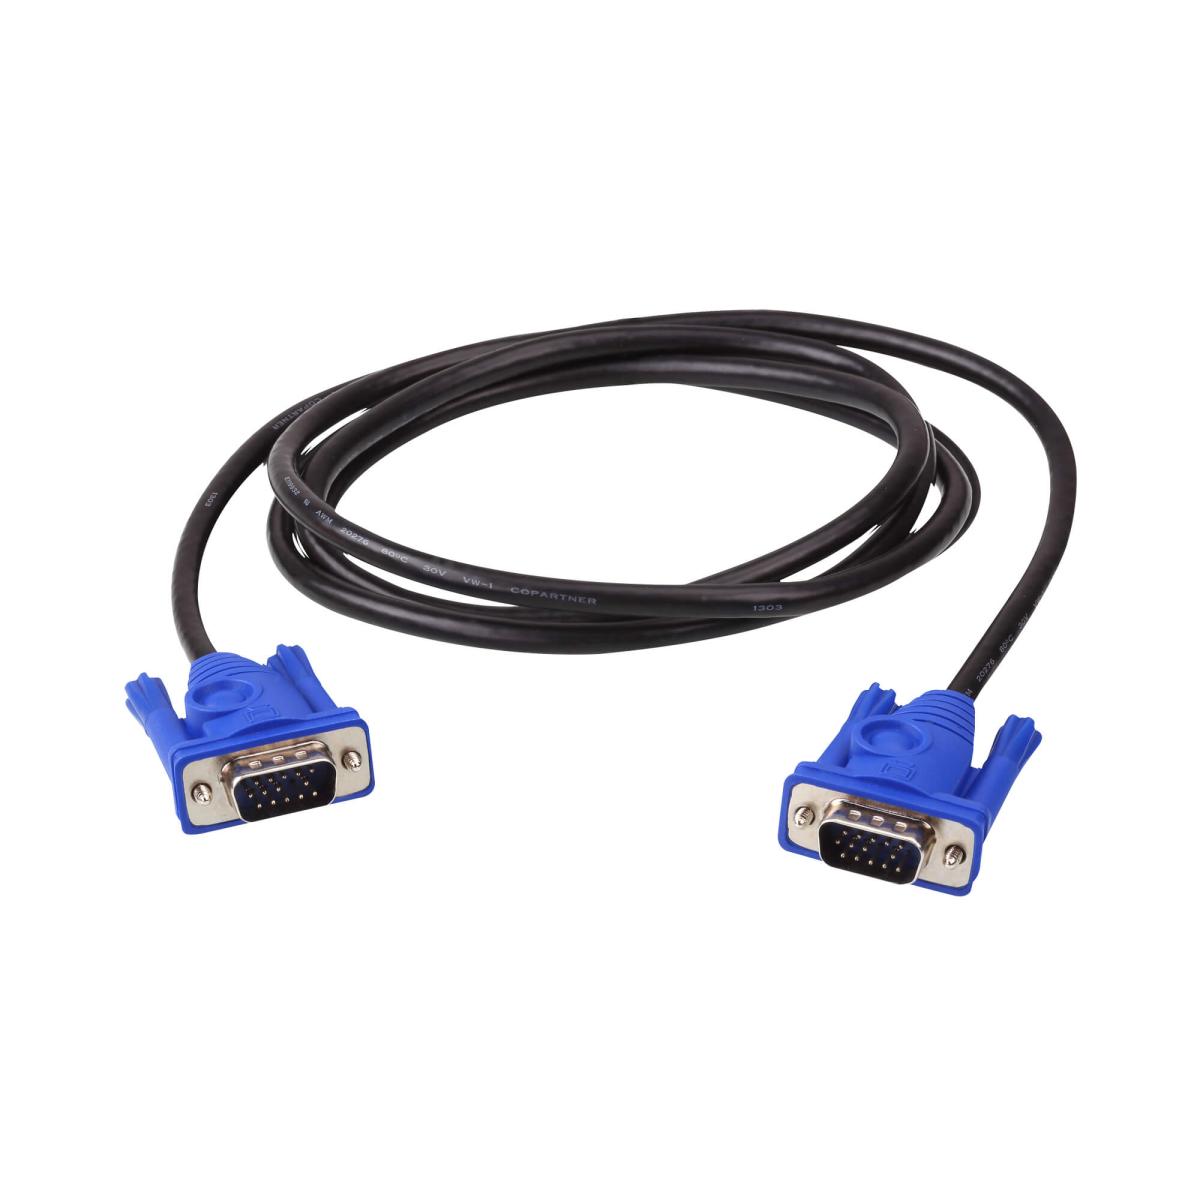 Cable VGA Male/Male 1.8m